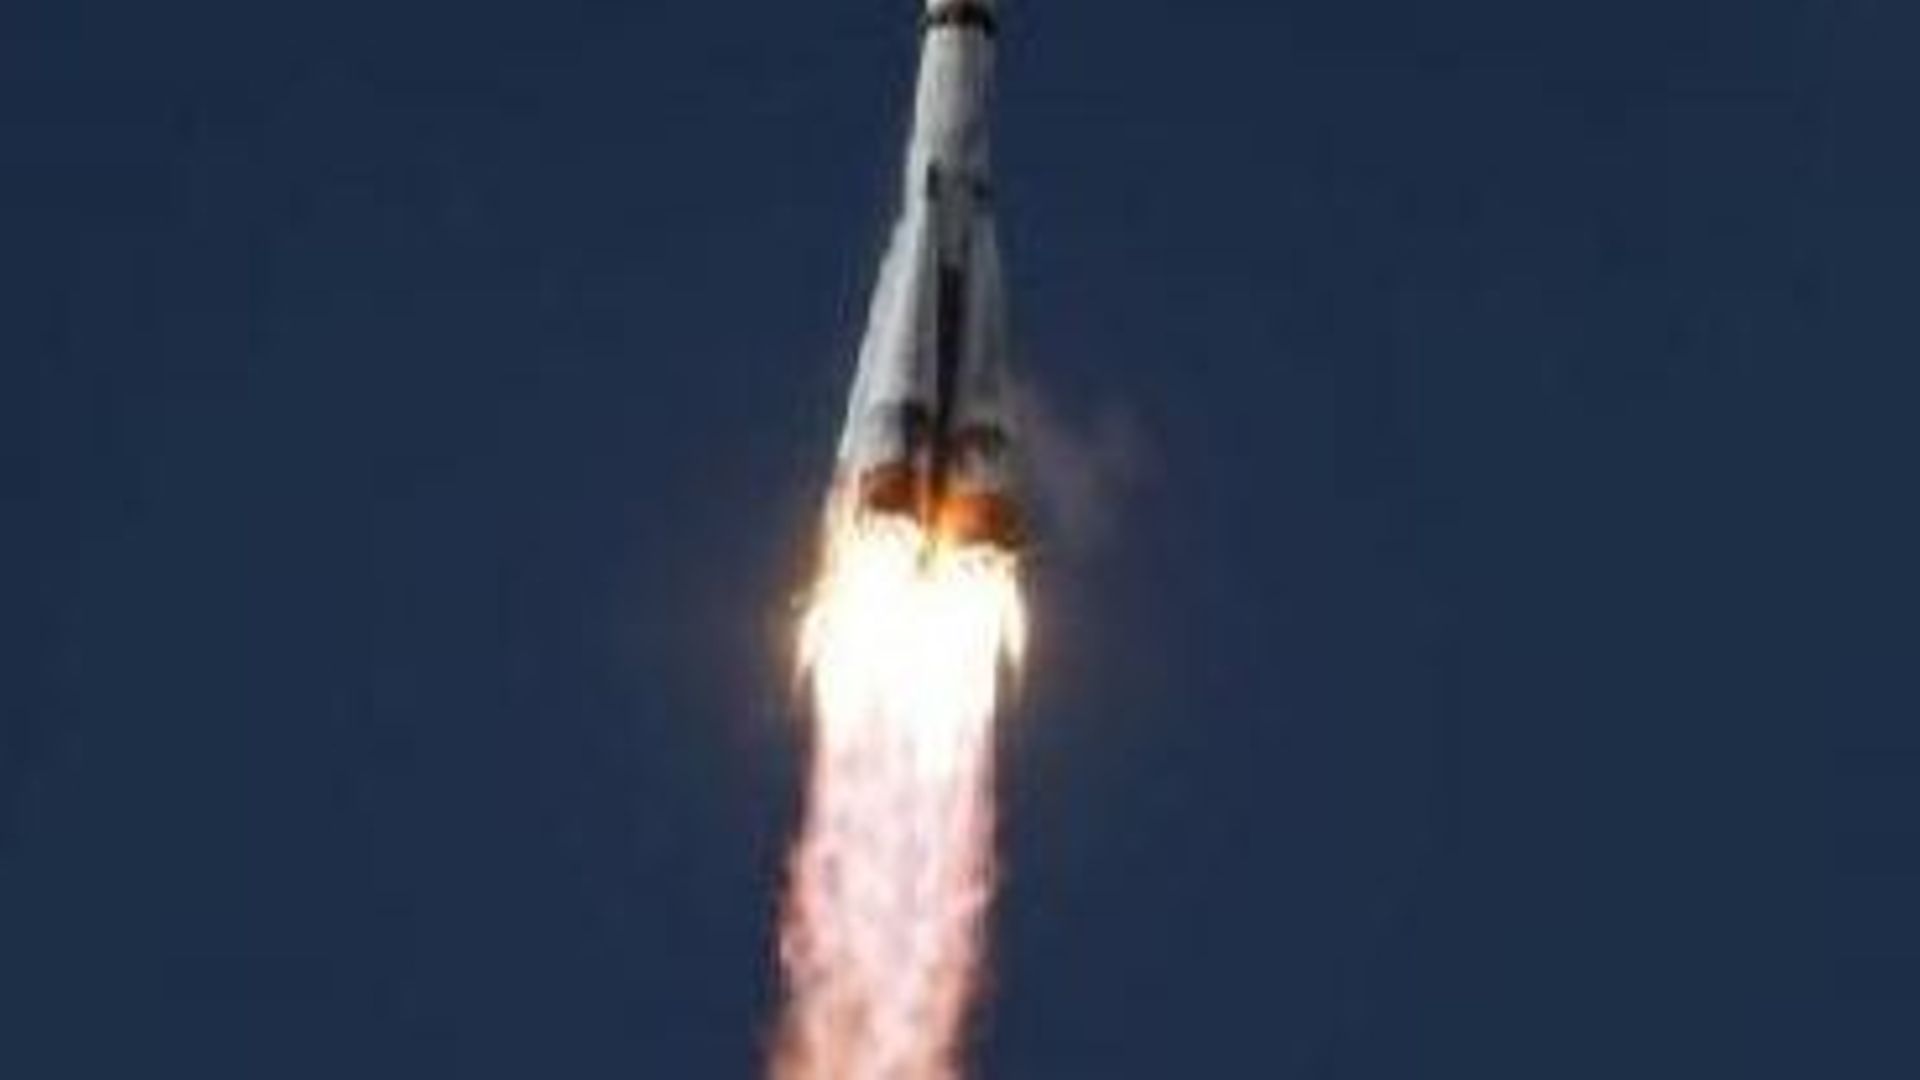 La capsule russe Soyouz s’est arrimée avec succès à l’ISS